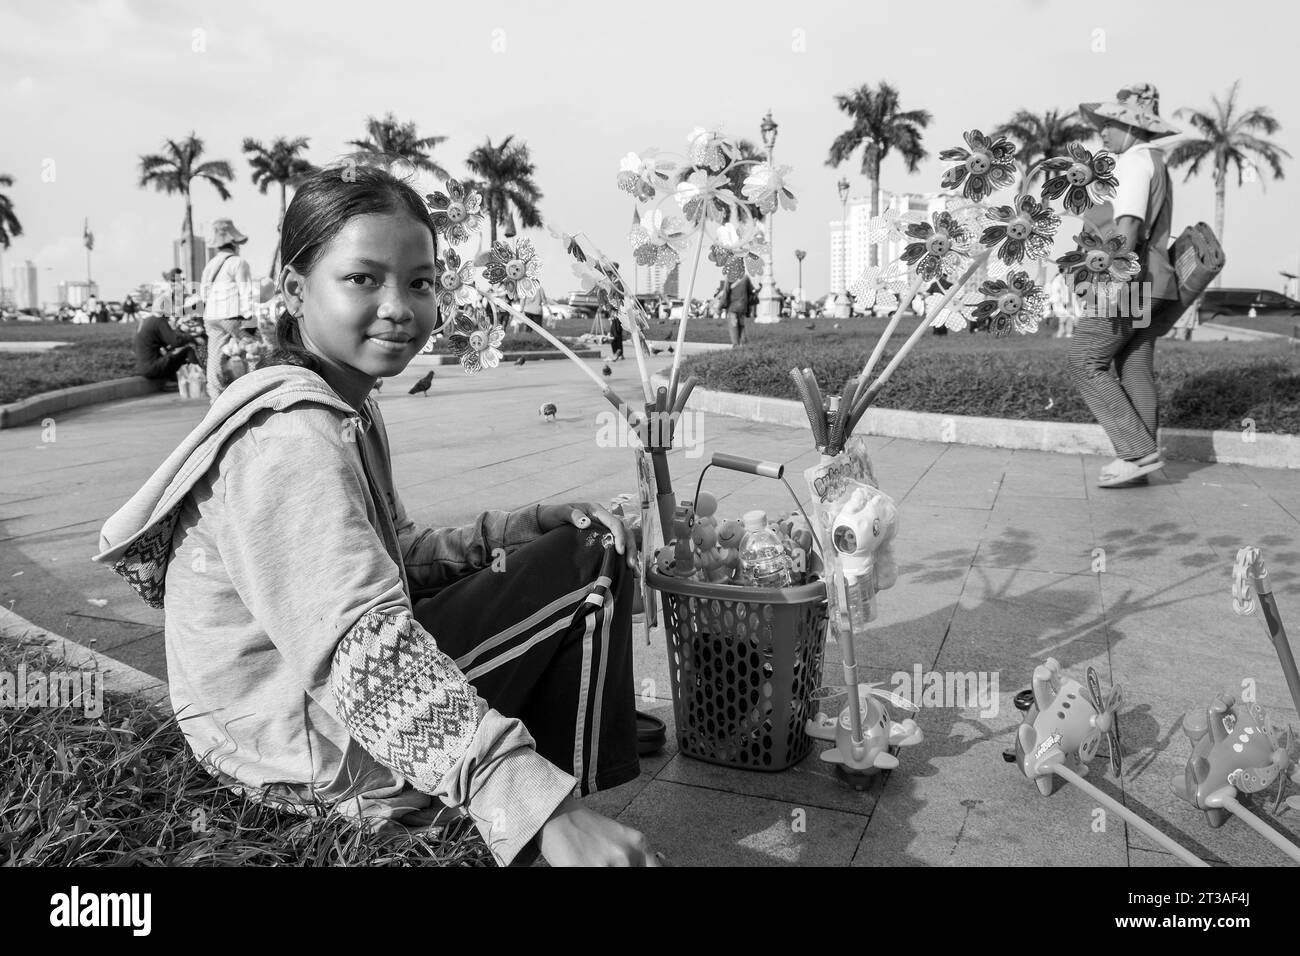 Cambodge, Phnom Penh, jeune colporteur Banque D'Images